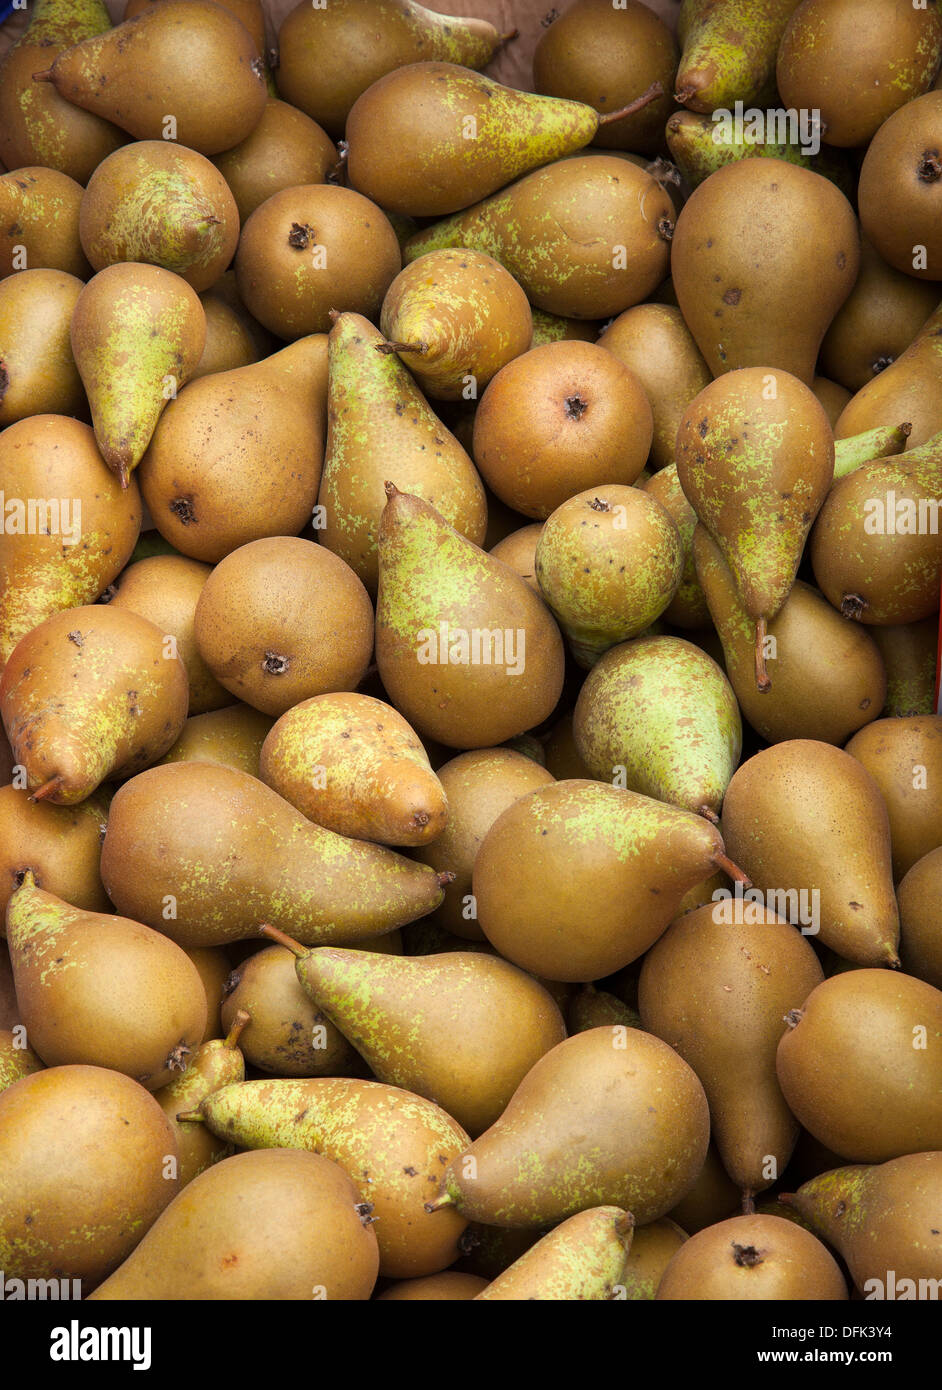 Fruits de verger imparfait automne_La poire plus populaires cultivées en Grande-Bretagne dans les vergers commerciaux, UK Banque D'Images